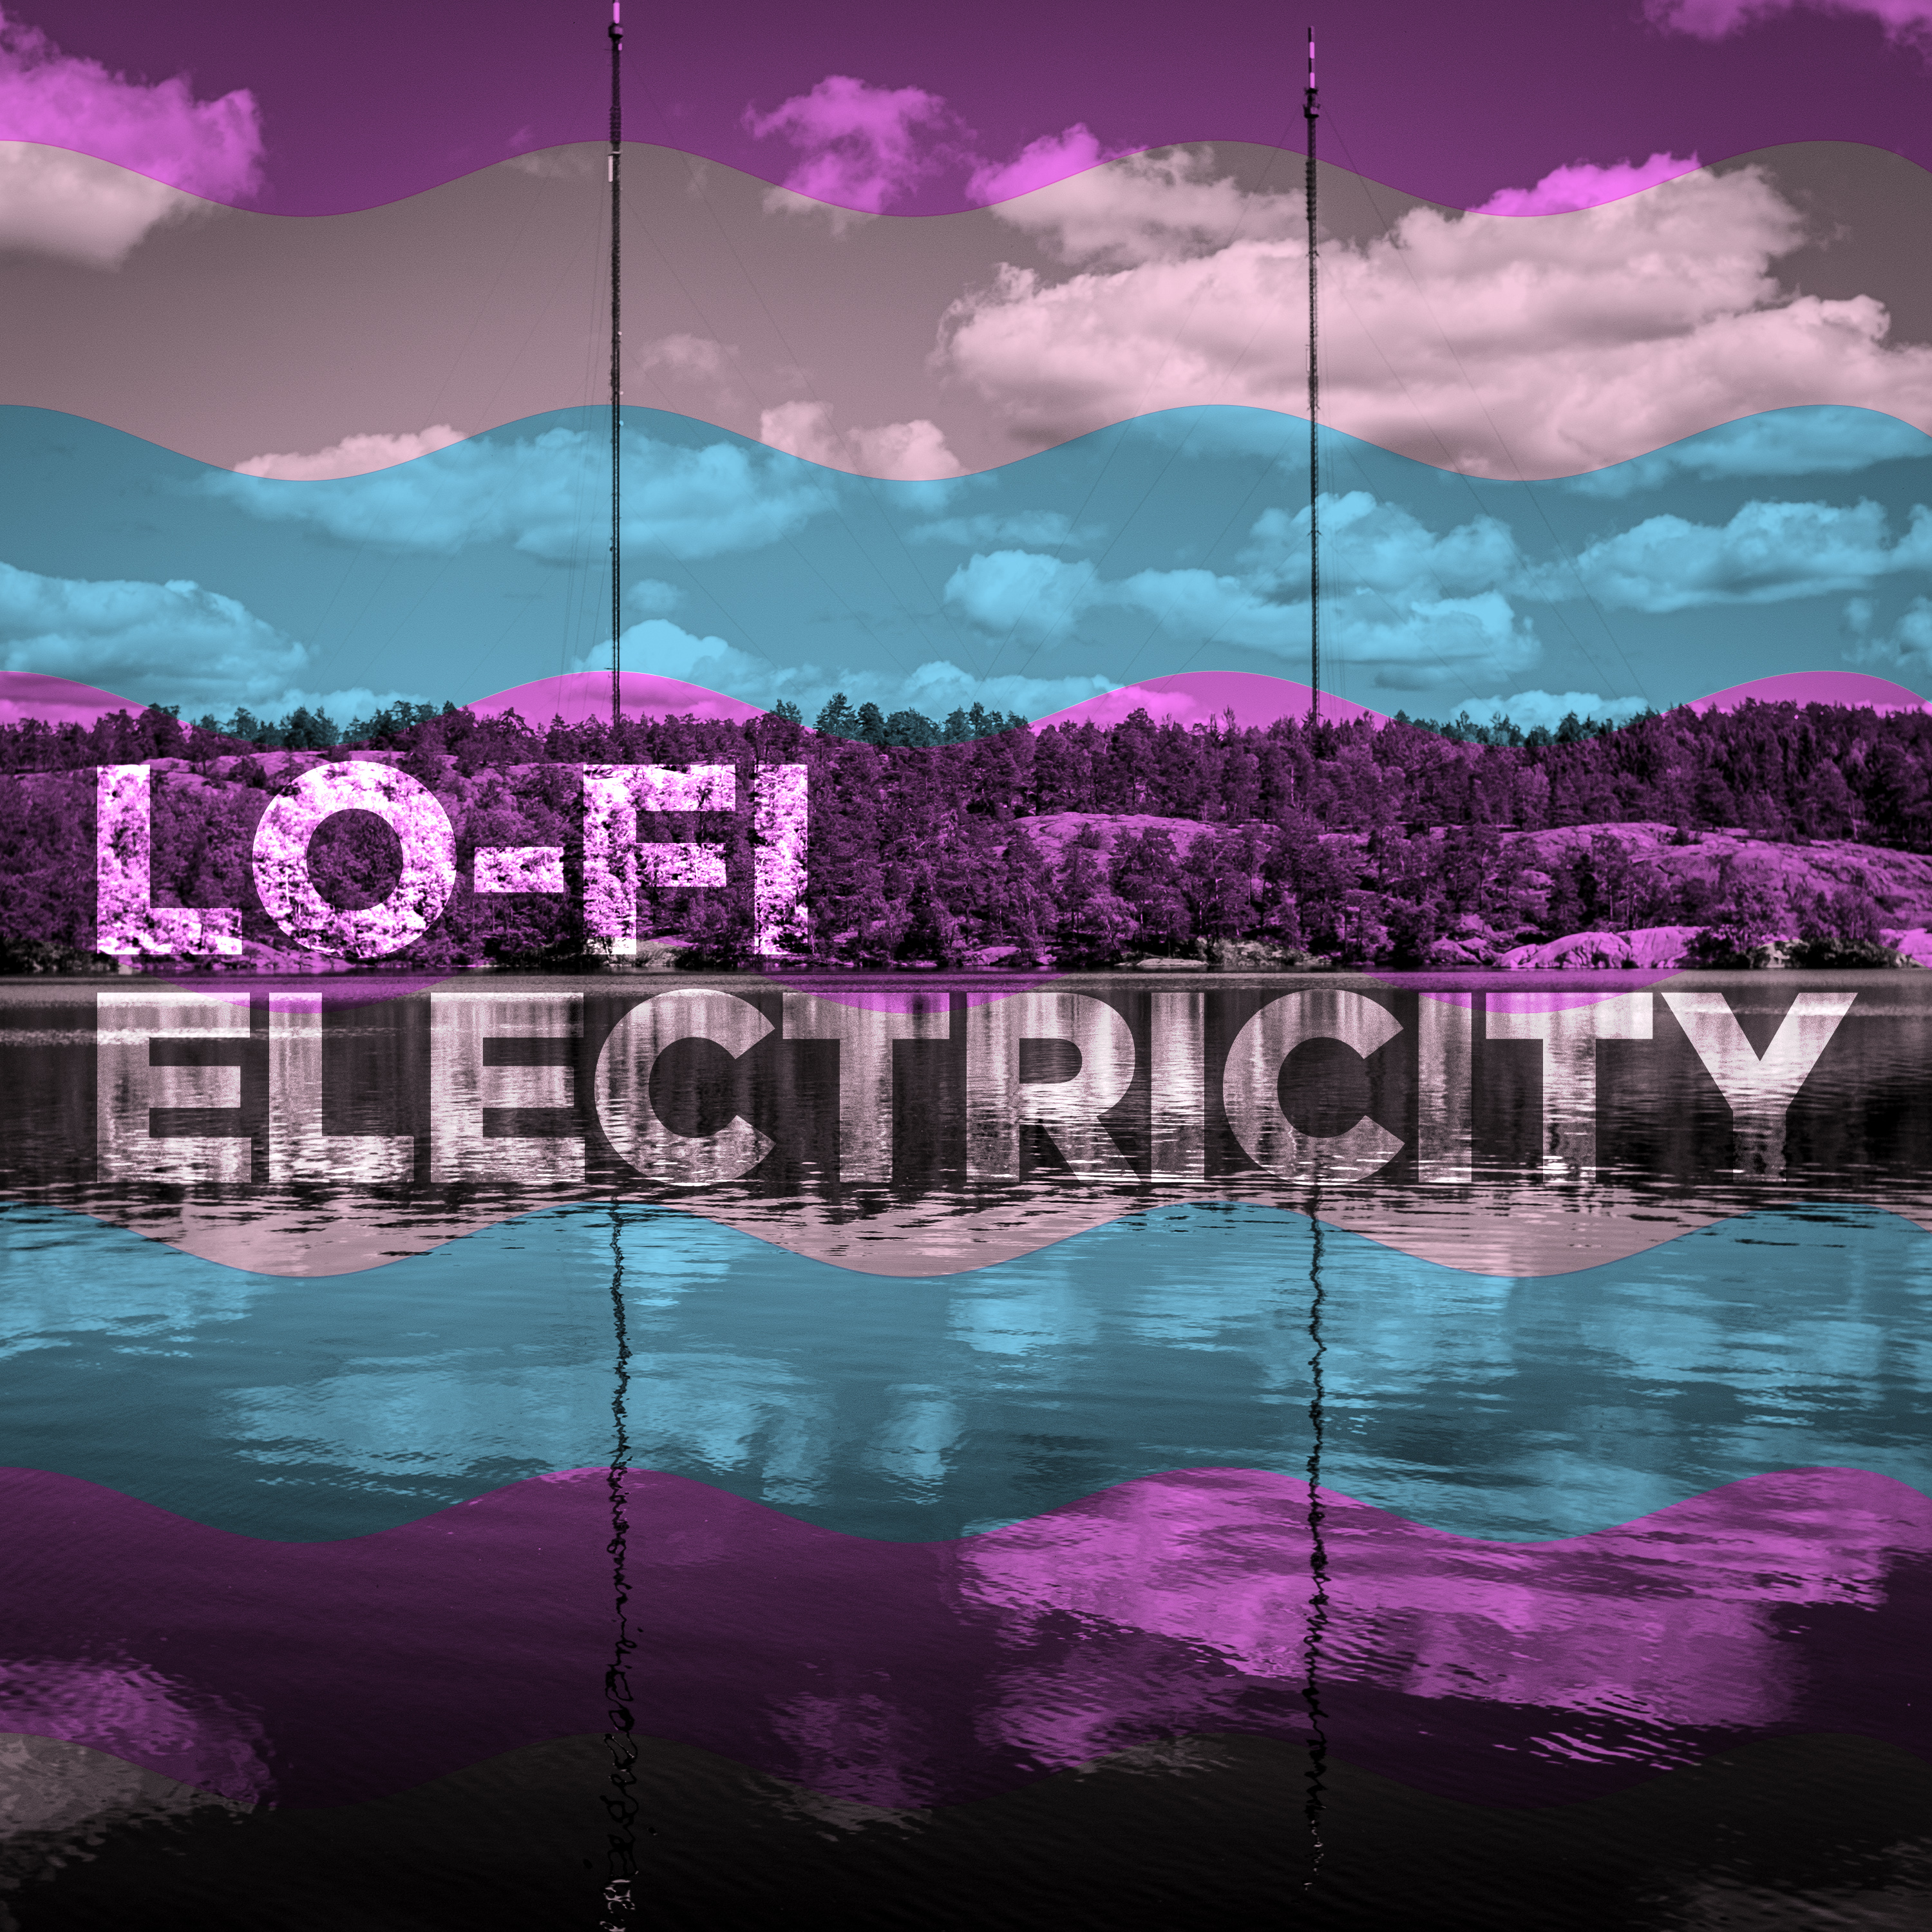 Lo-fi Electricity